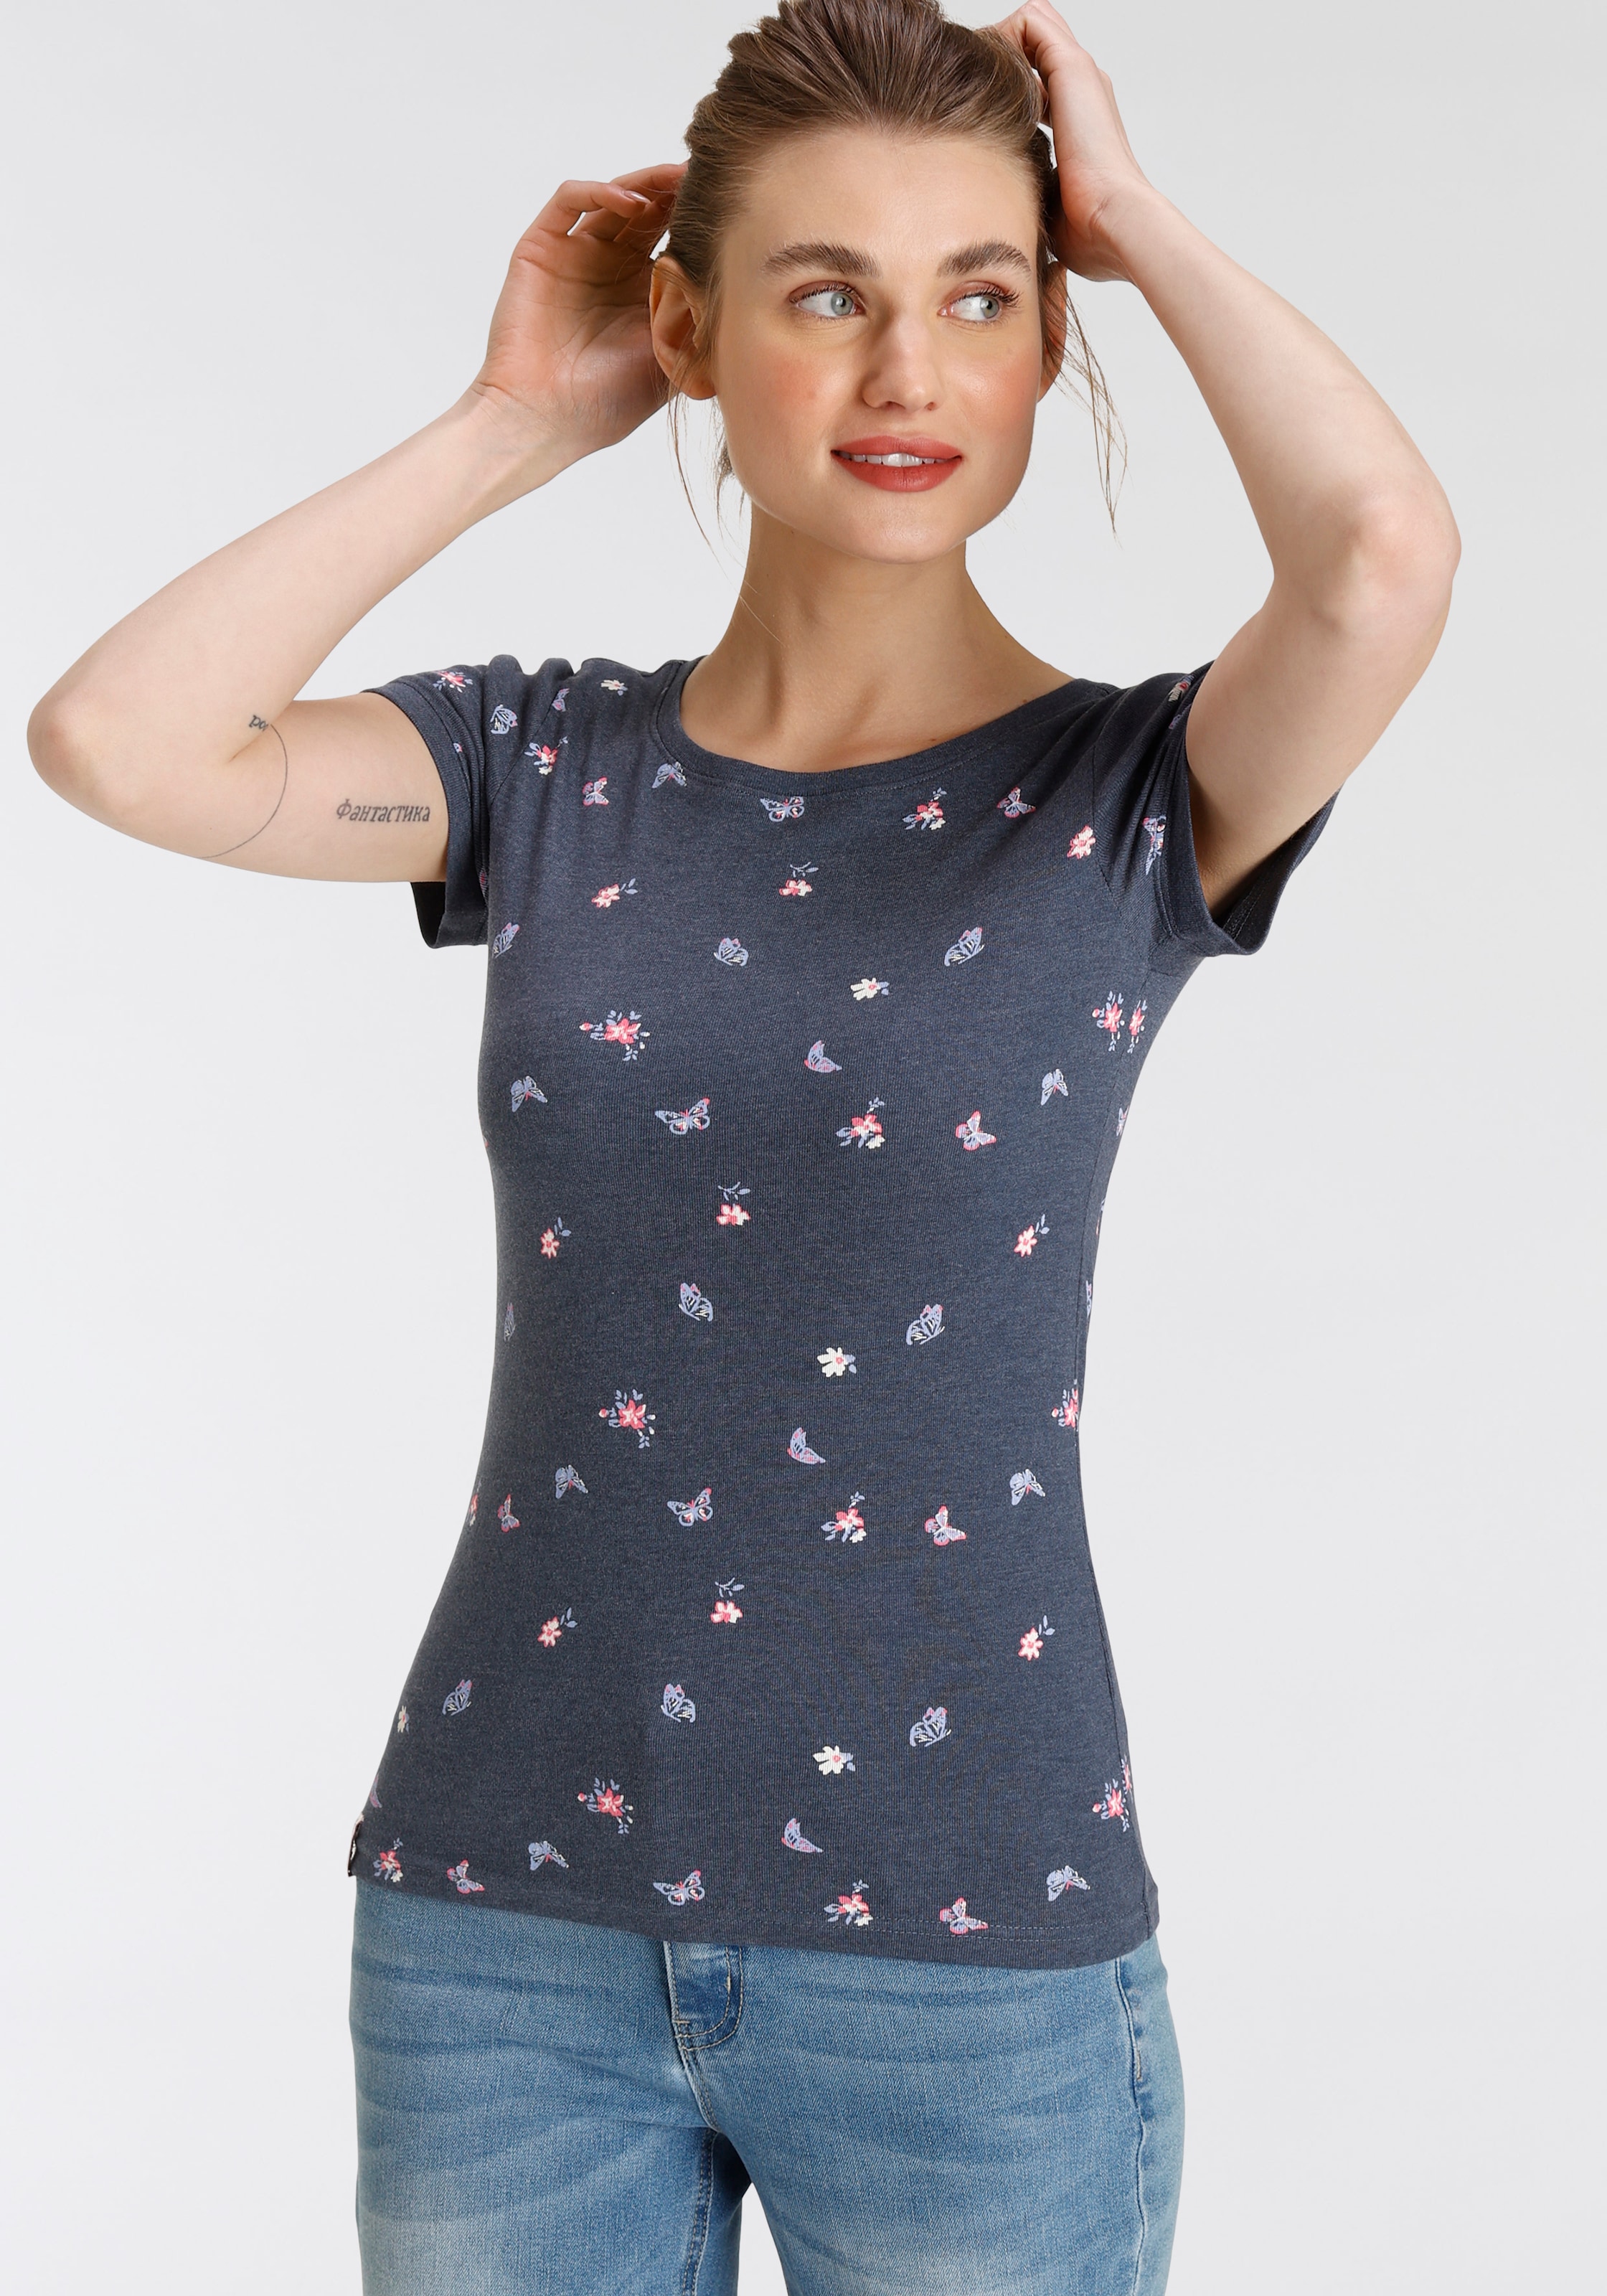 KOLLEKTION - - süßem & mit OTTOversand Blumen T-Shirt, NEUE Alloverdruck KangaROOS bei Schmetterling